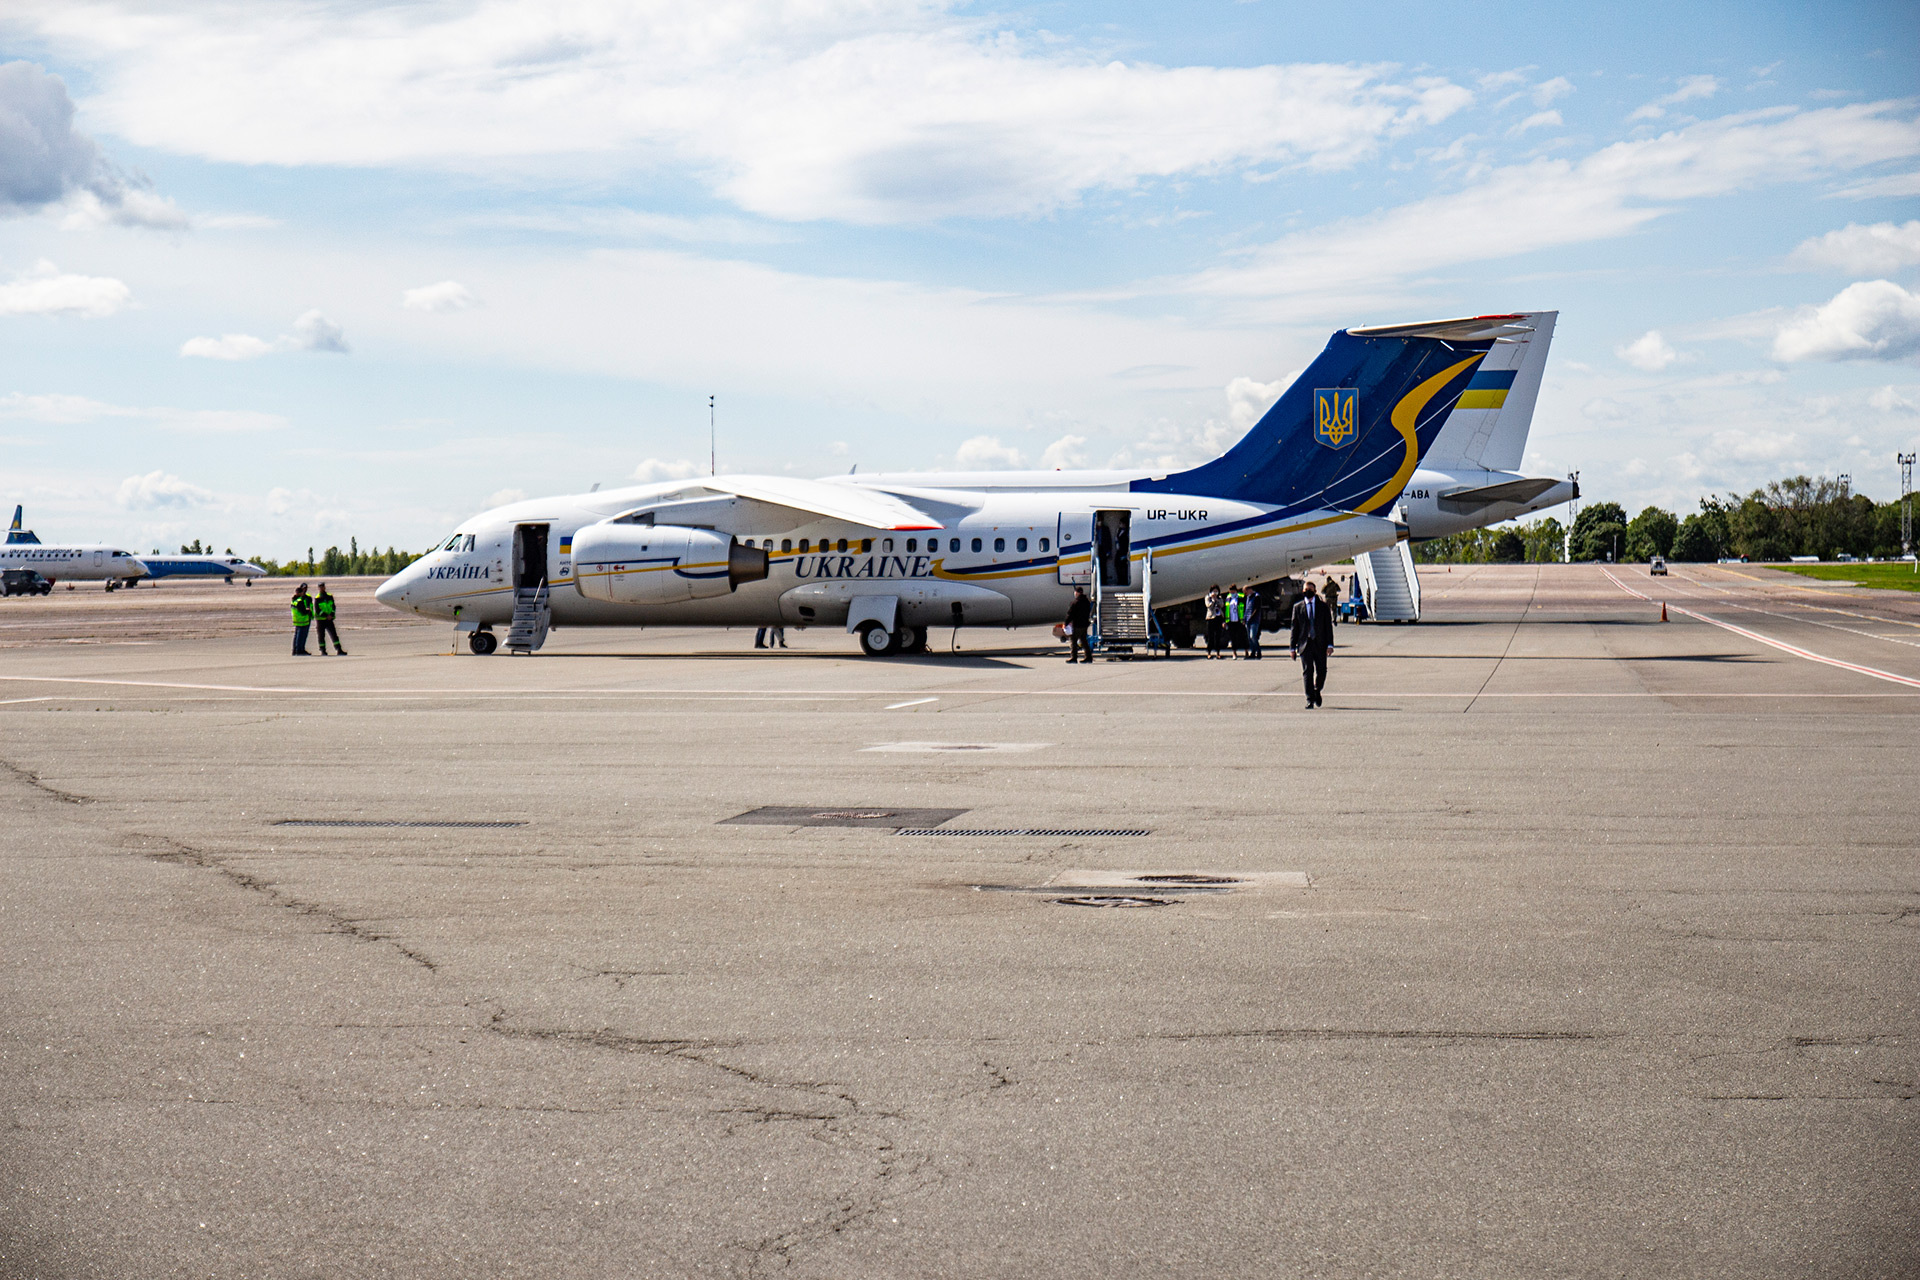 В авиапарке президента Зеленского есть АН-148 – для внутренних перелетов. Для зарубежных поездок – Airbus А319CJ. Плюс вертолет Ми-8 и небольшой Ан-74